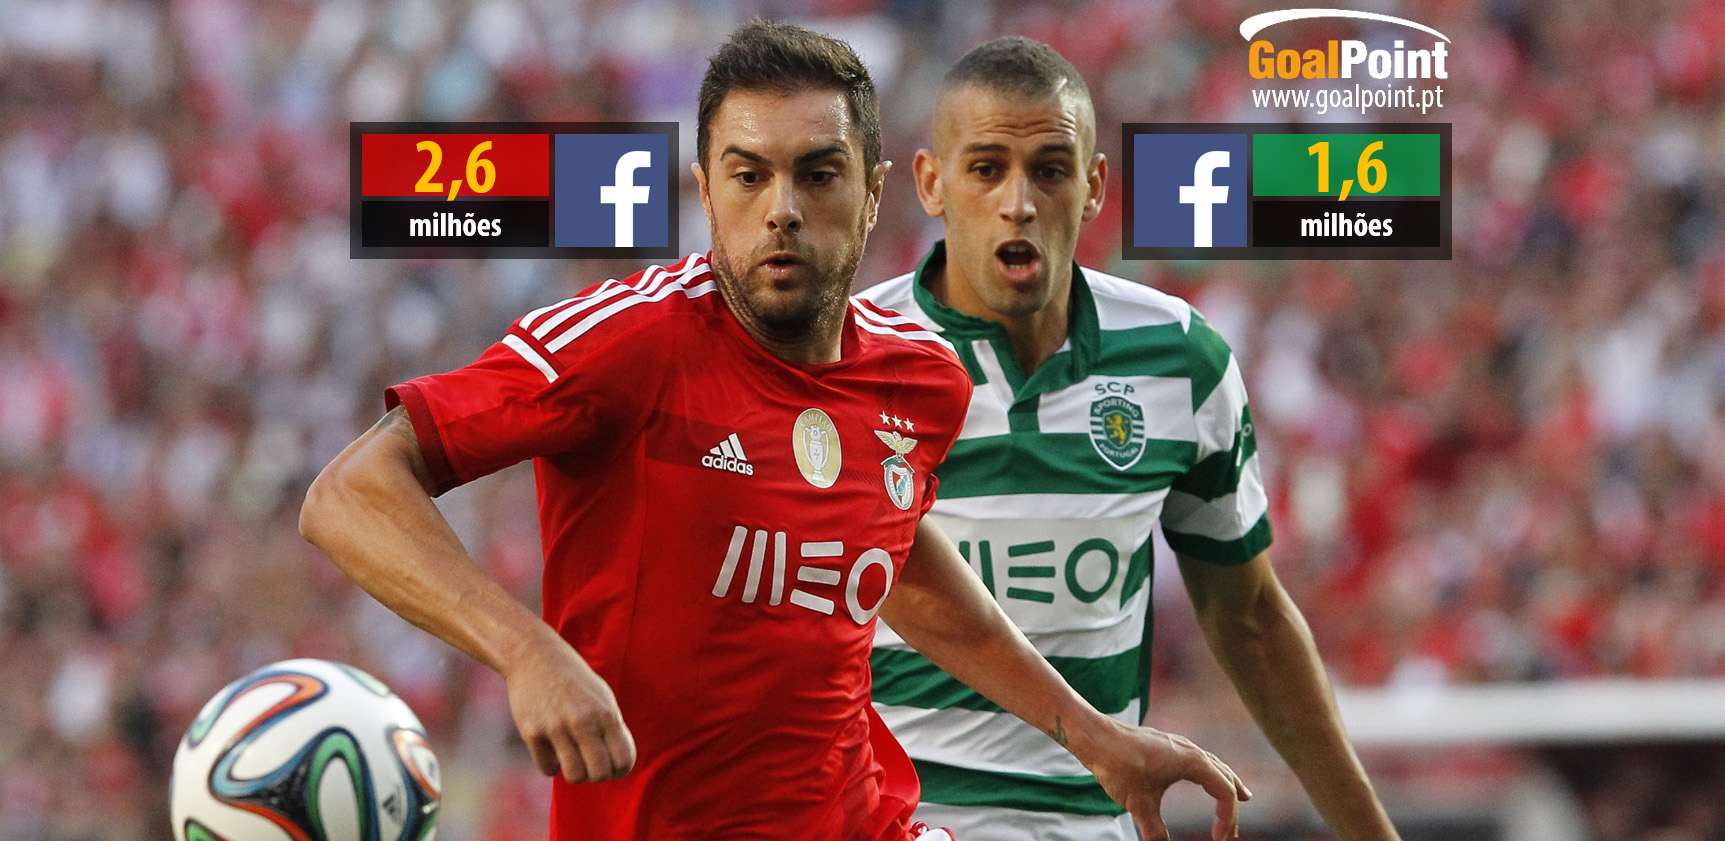 Benfica, Porto e Sporting recolhem mais de 90% do total de seguidores dos clubes da primeira Liga no Facebook (foto: J. Trindade infografia: GoalPoint)